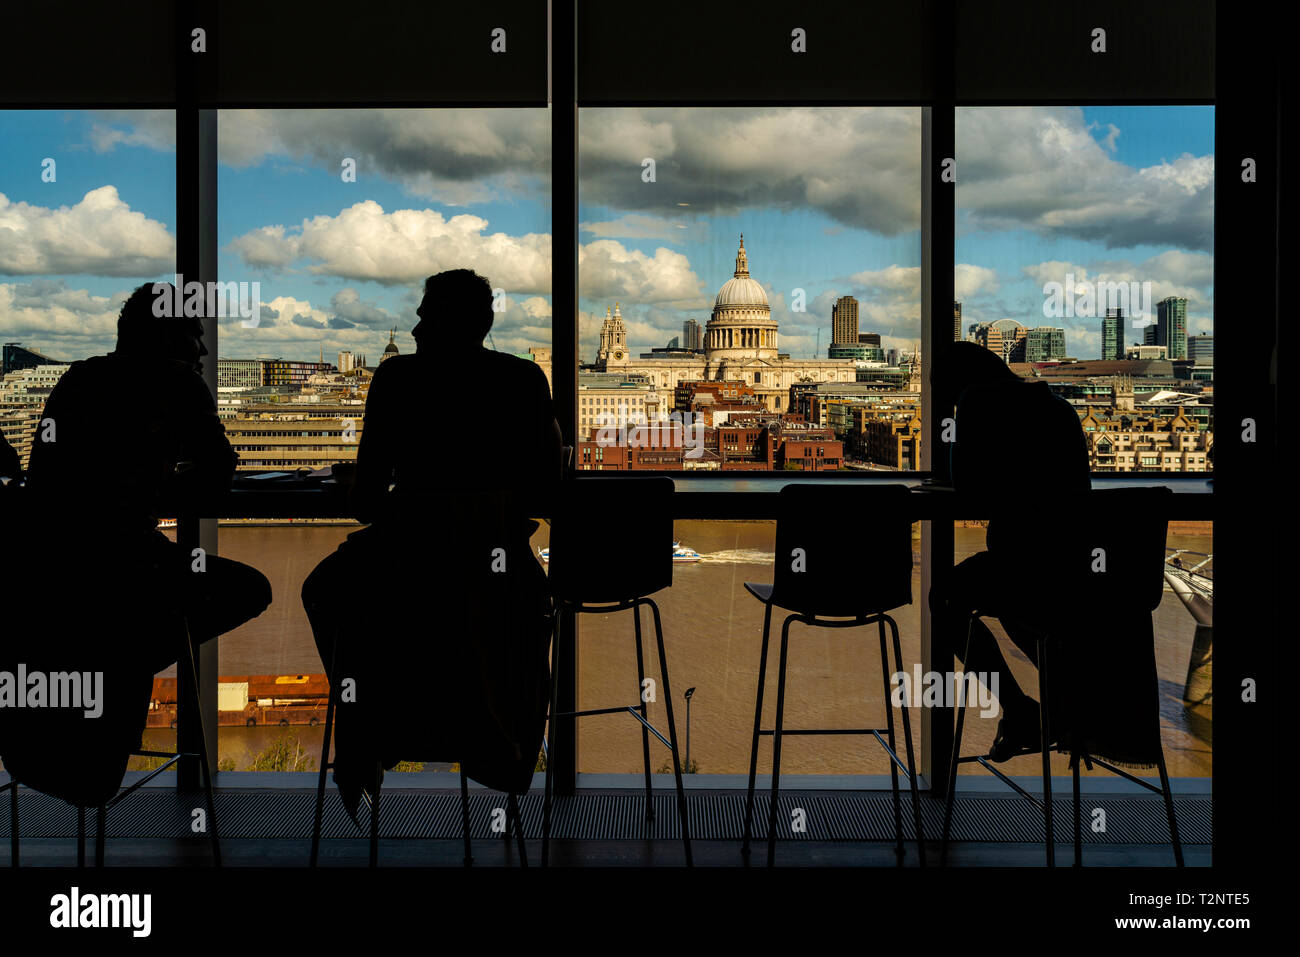 Silueta de personas tener conversación por una ventana de vidrio, la Catedral de St Paul, en el fondo, la ciudad de Londres, Reino Unido Foto de stock